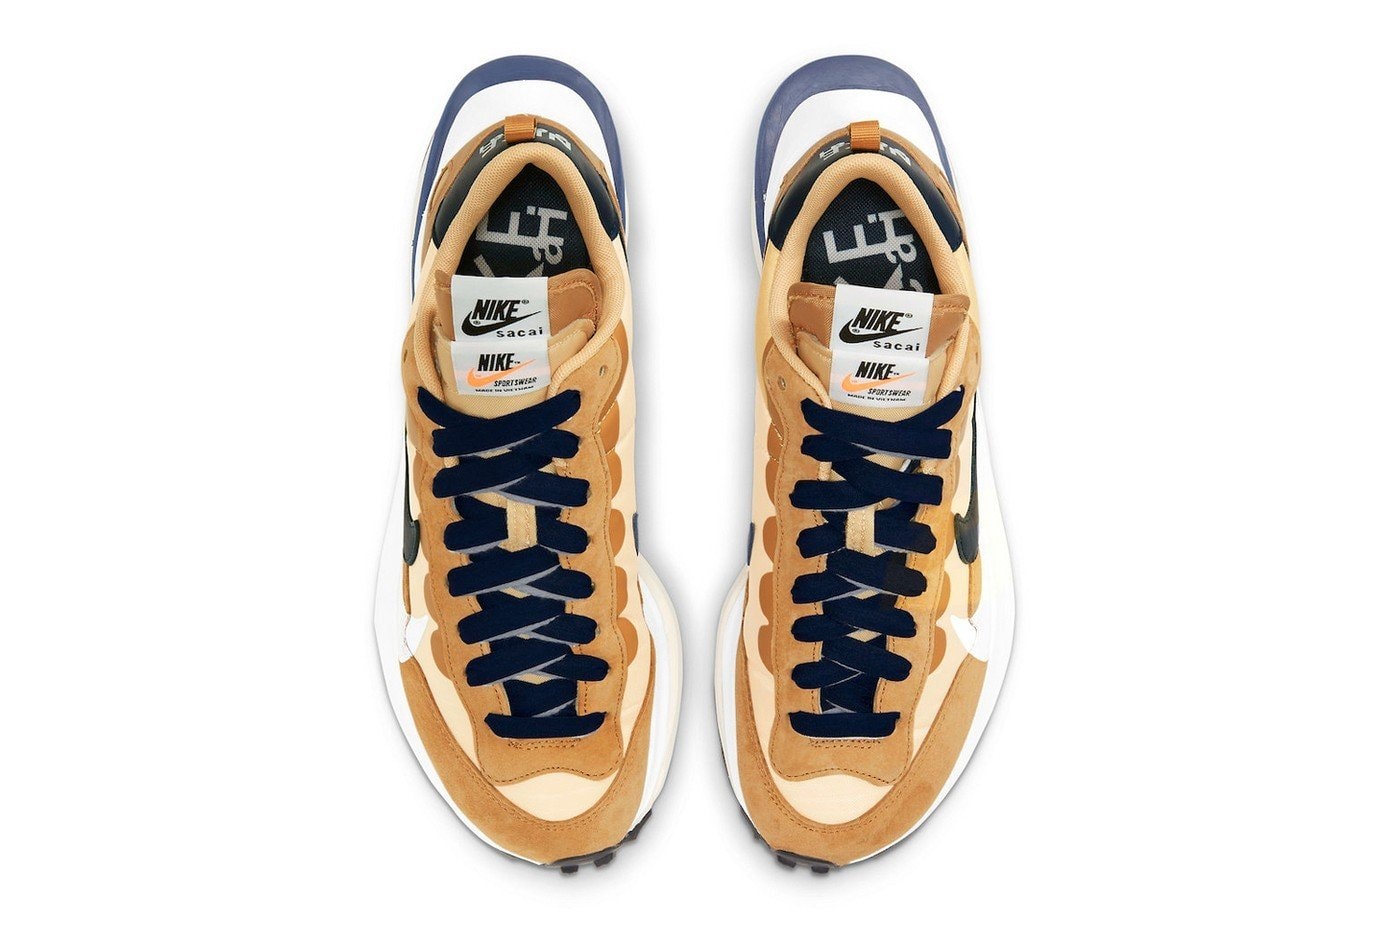 sacai x Nike Vaporwaffle 2021 春季聯名鞋款港台發售情報公開